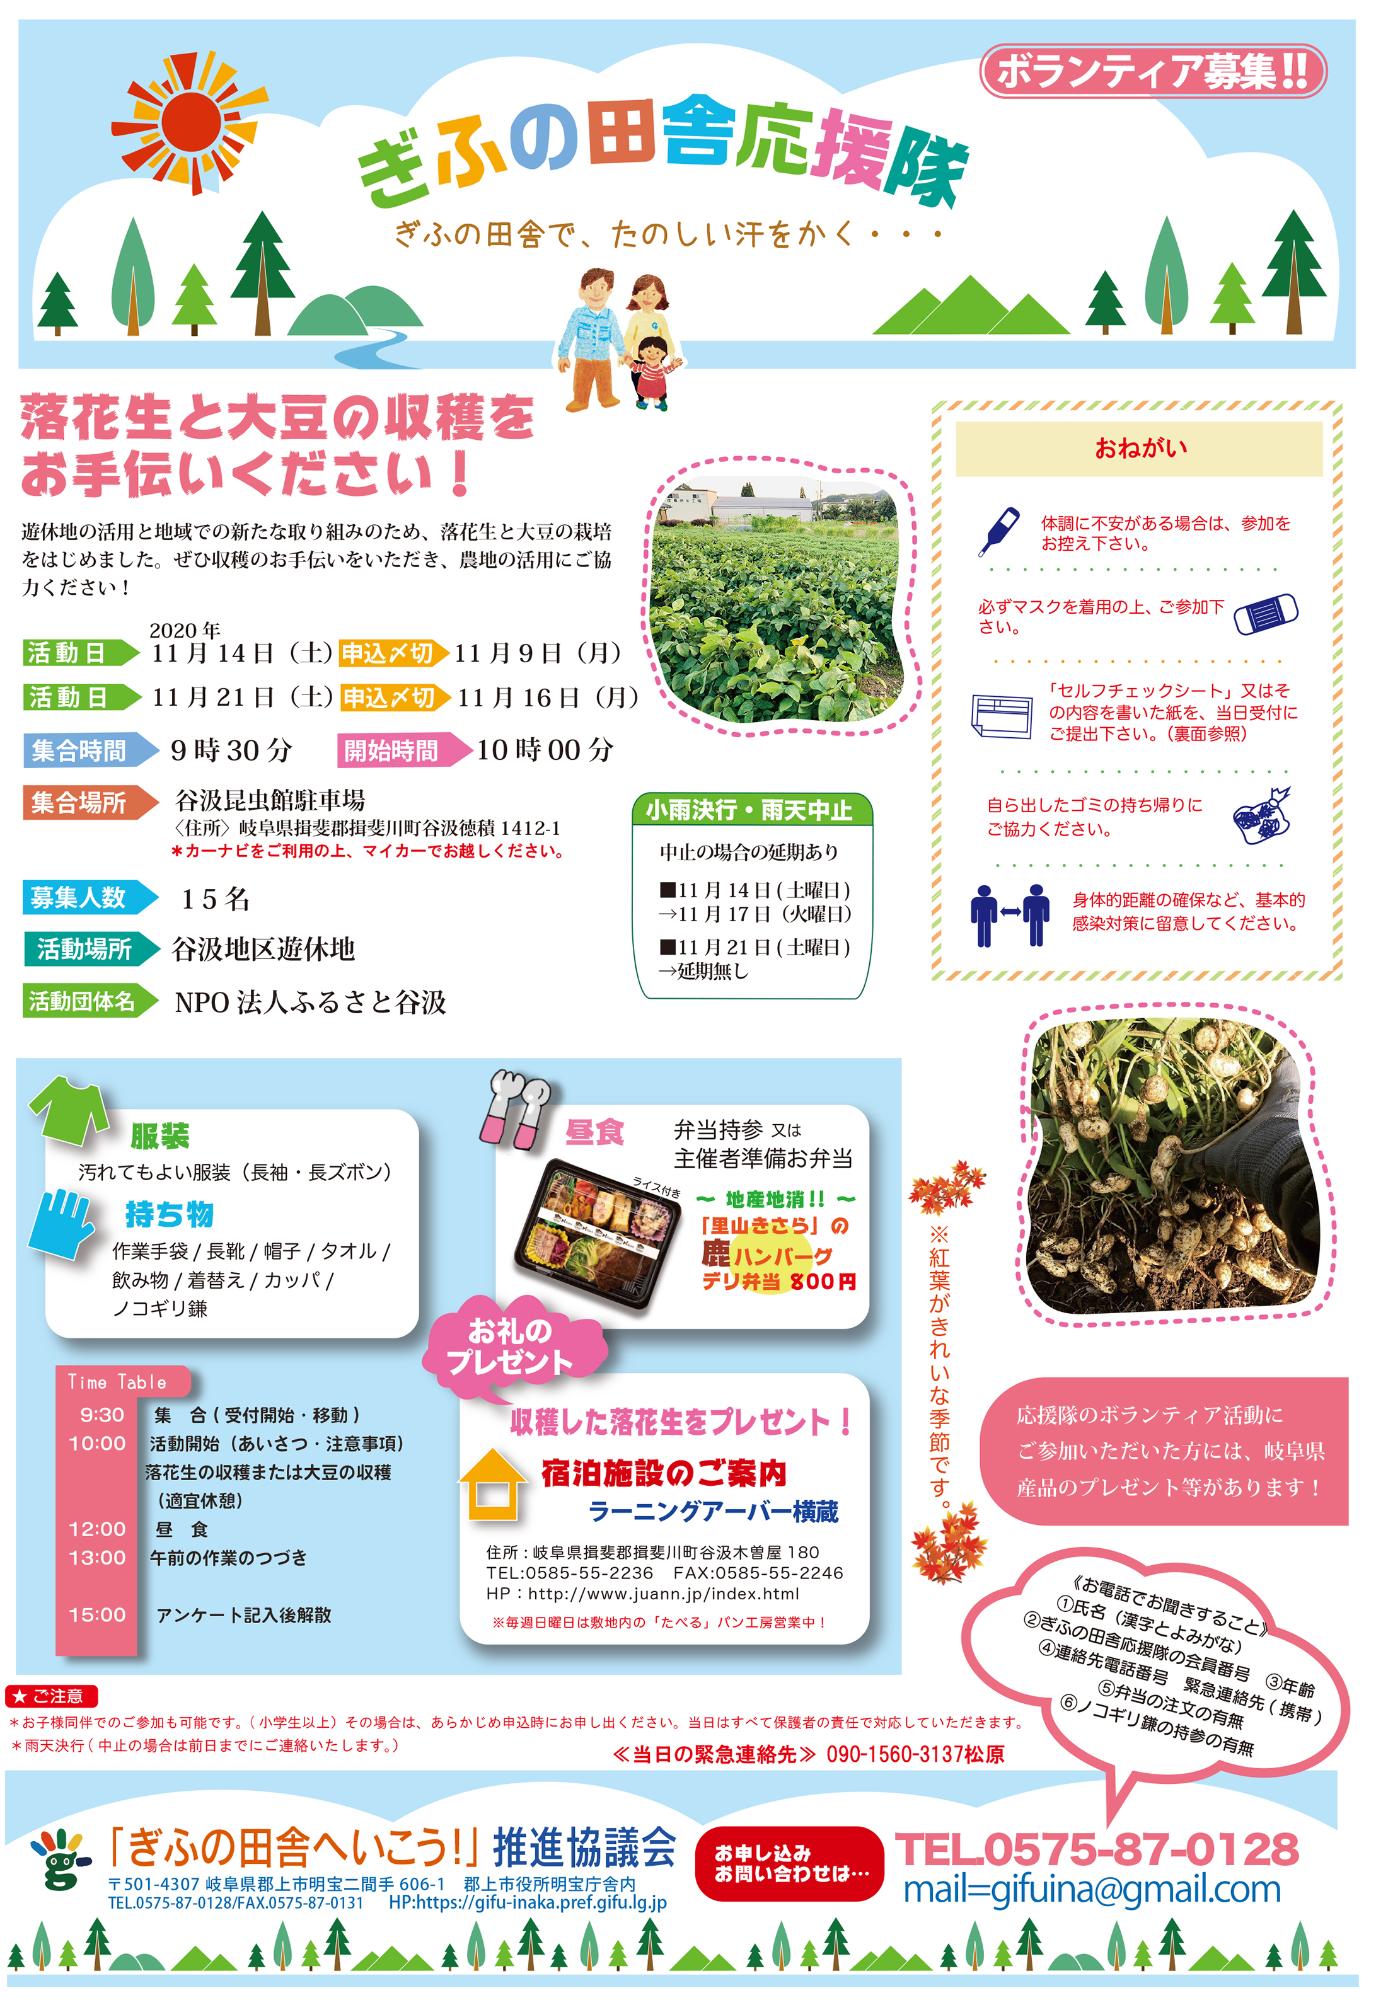 終了しました 11月14日 21日落花生と大豆の収穫をお手伝いください 岐阜県グリーン ツーリズムサイト